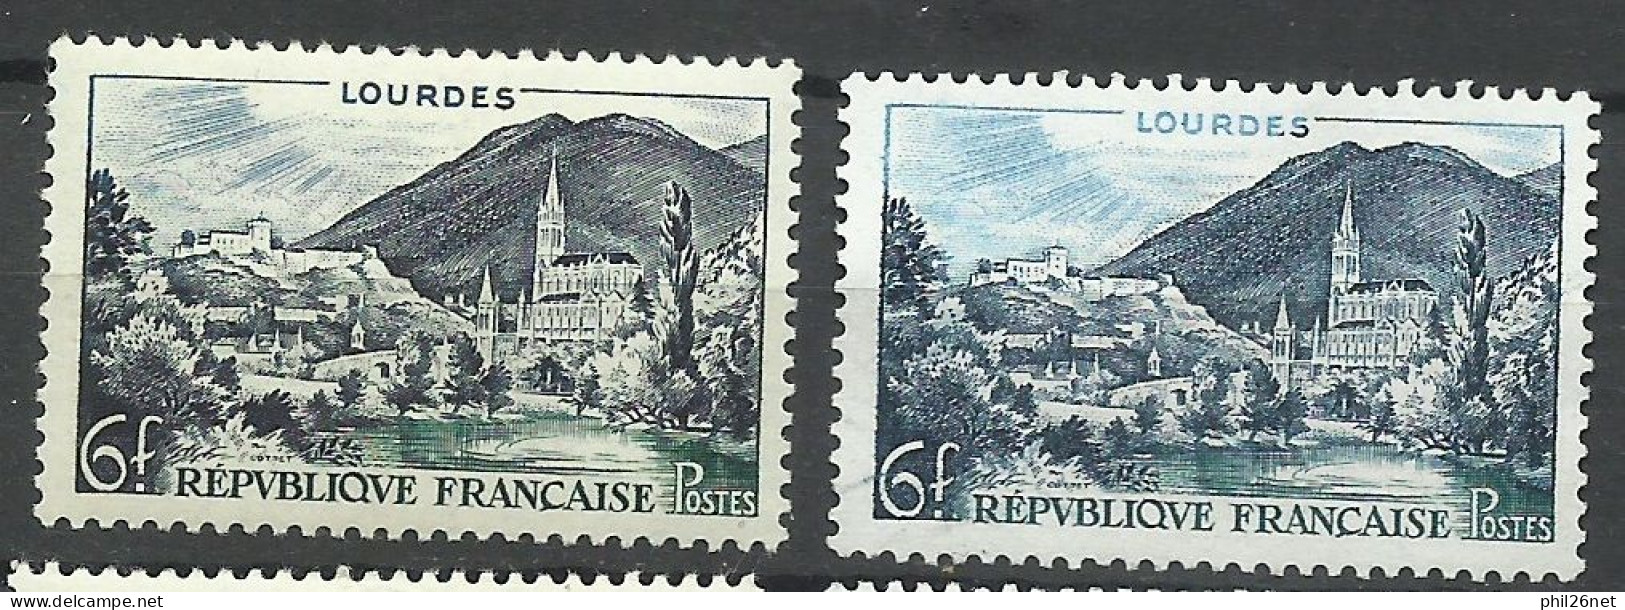 France  N° 976   Lourdes Bleu Ciel   Neuf ( * )  B/TB Le  Timbre Type Sur Les Scans Pour Comparer Soldé ! ! ! - Unused Stamps